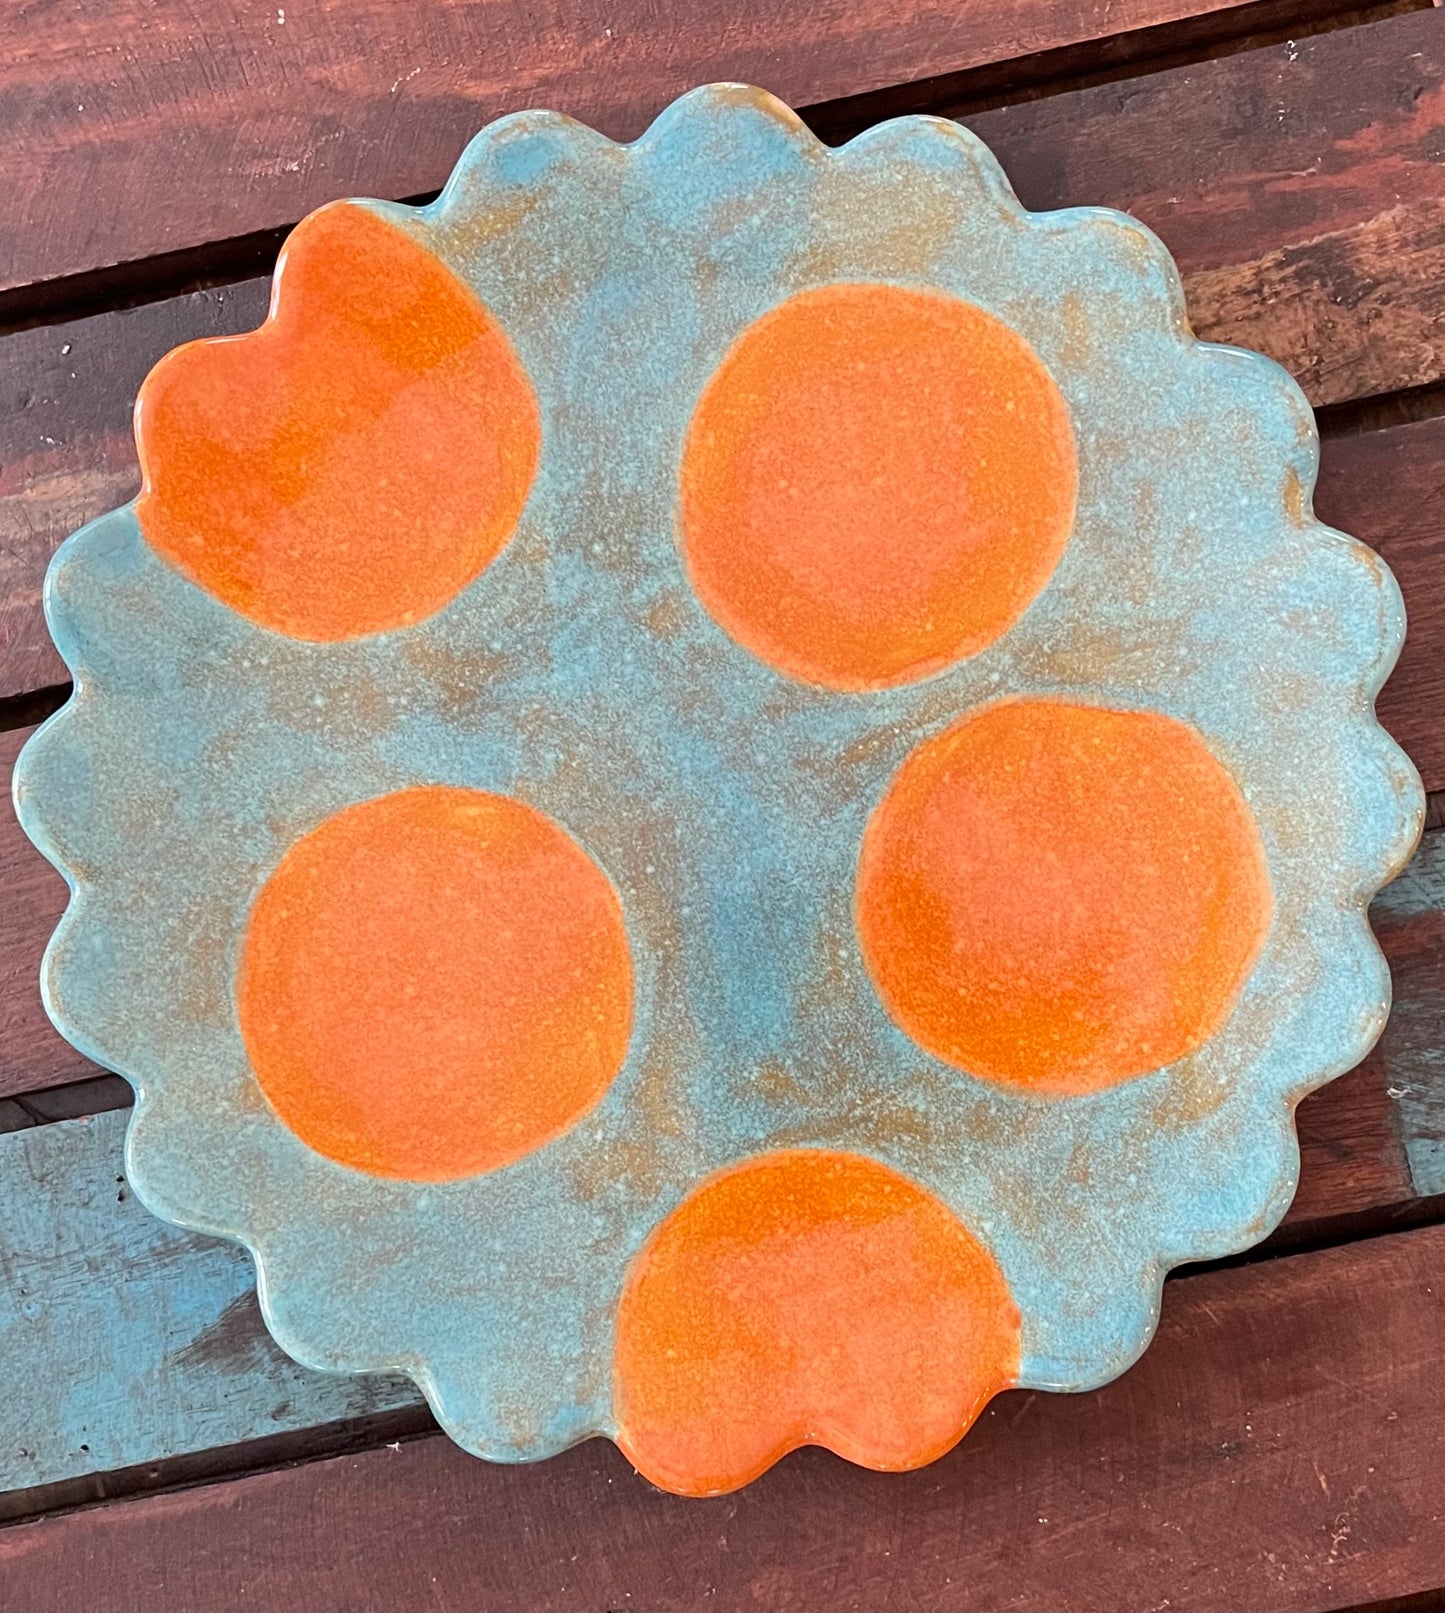 Blue Scalloped orange polka dot plate